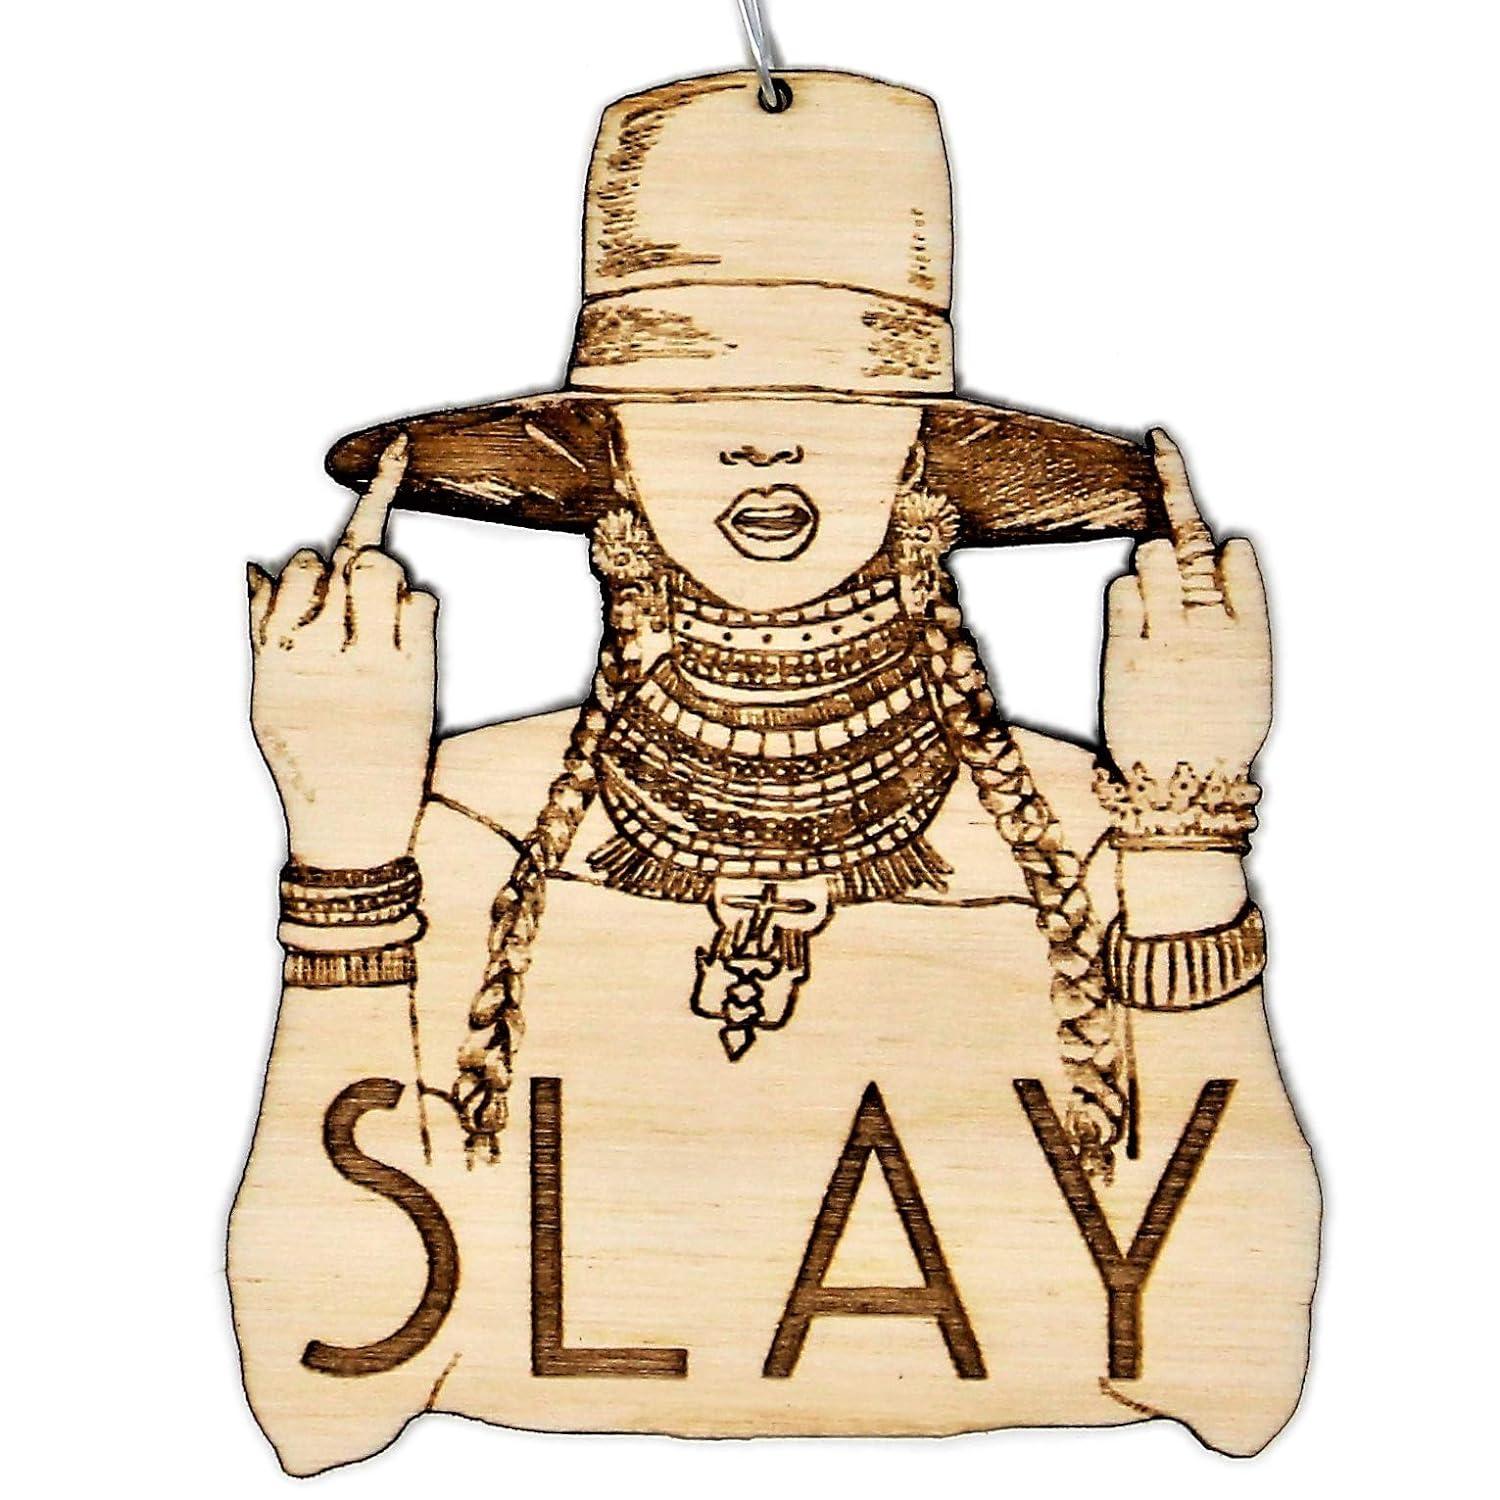 Um ornamento de uma silhueta de Beyoncé com a palavra "Slay"